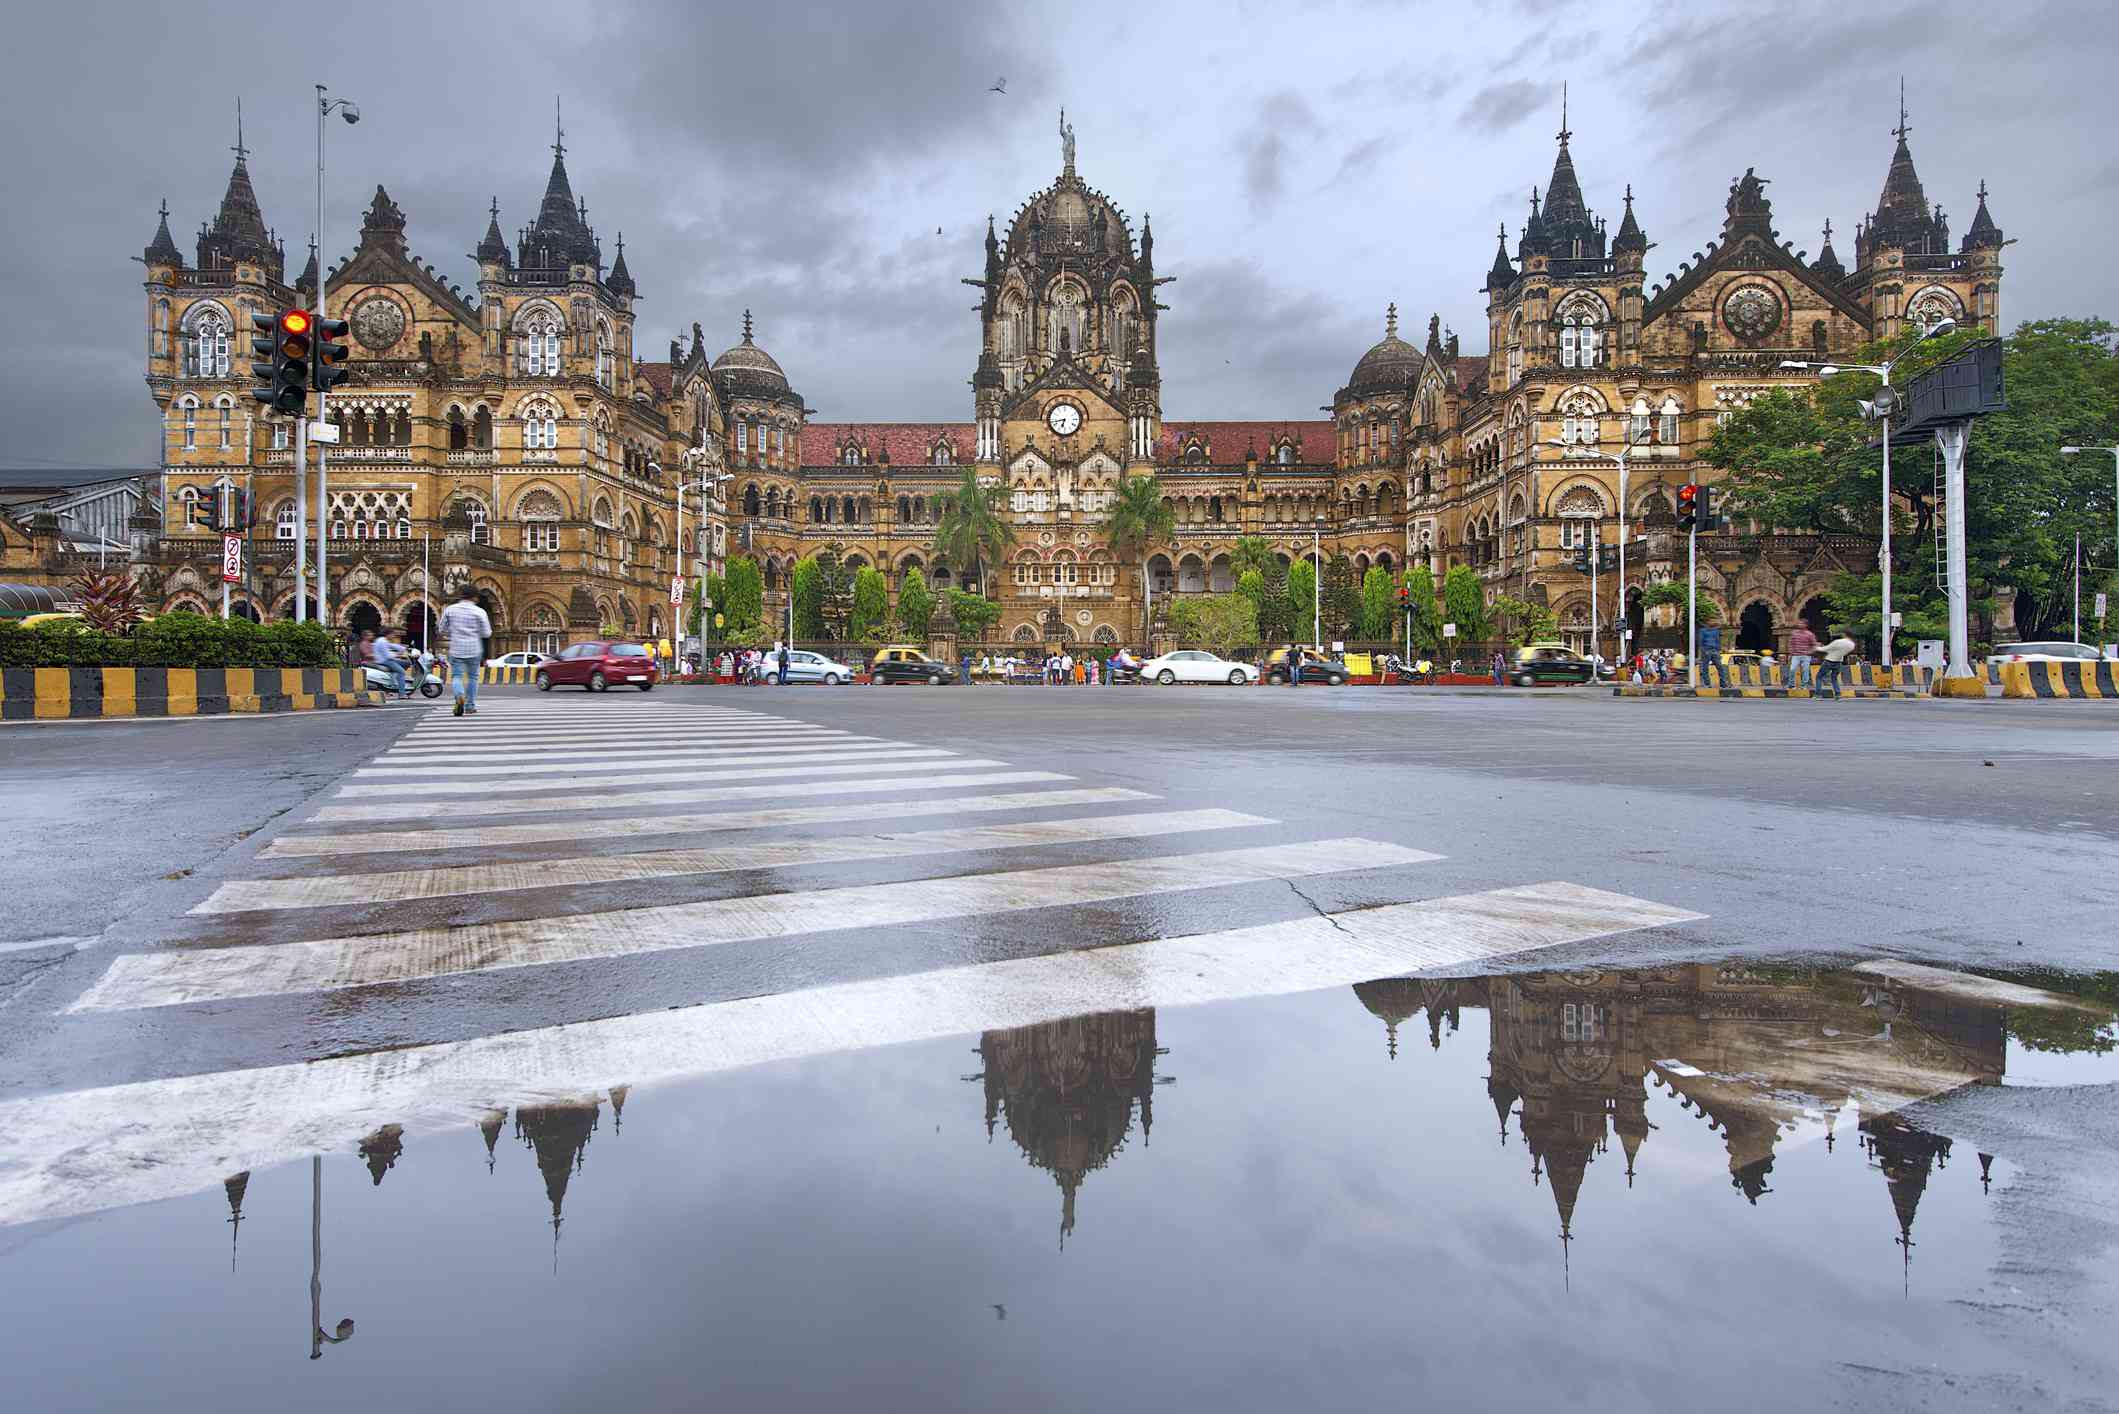 Dříve známá jako Victoria Terminus, toto je hlavní nádraží v Bombaji, které se odráží v kalužích vody po monzunovém dešti.